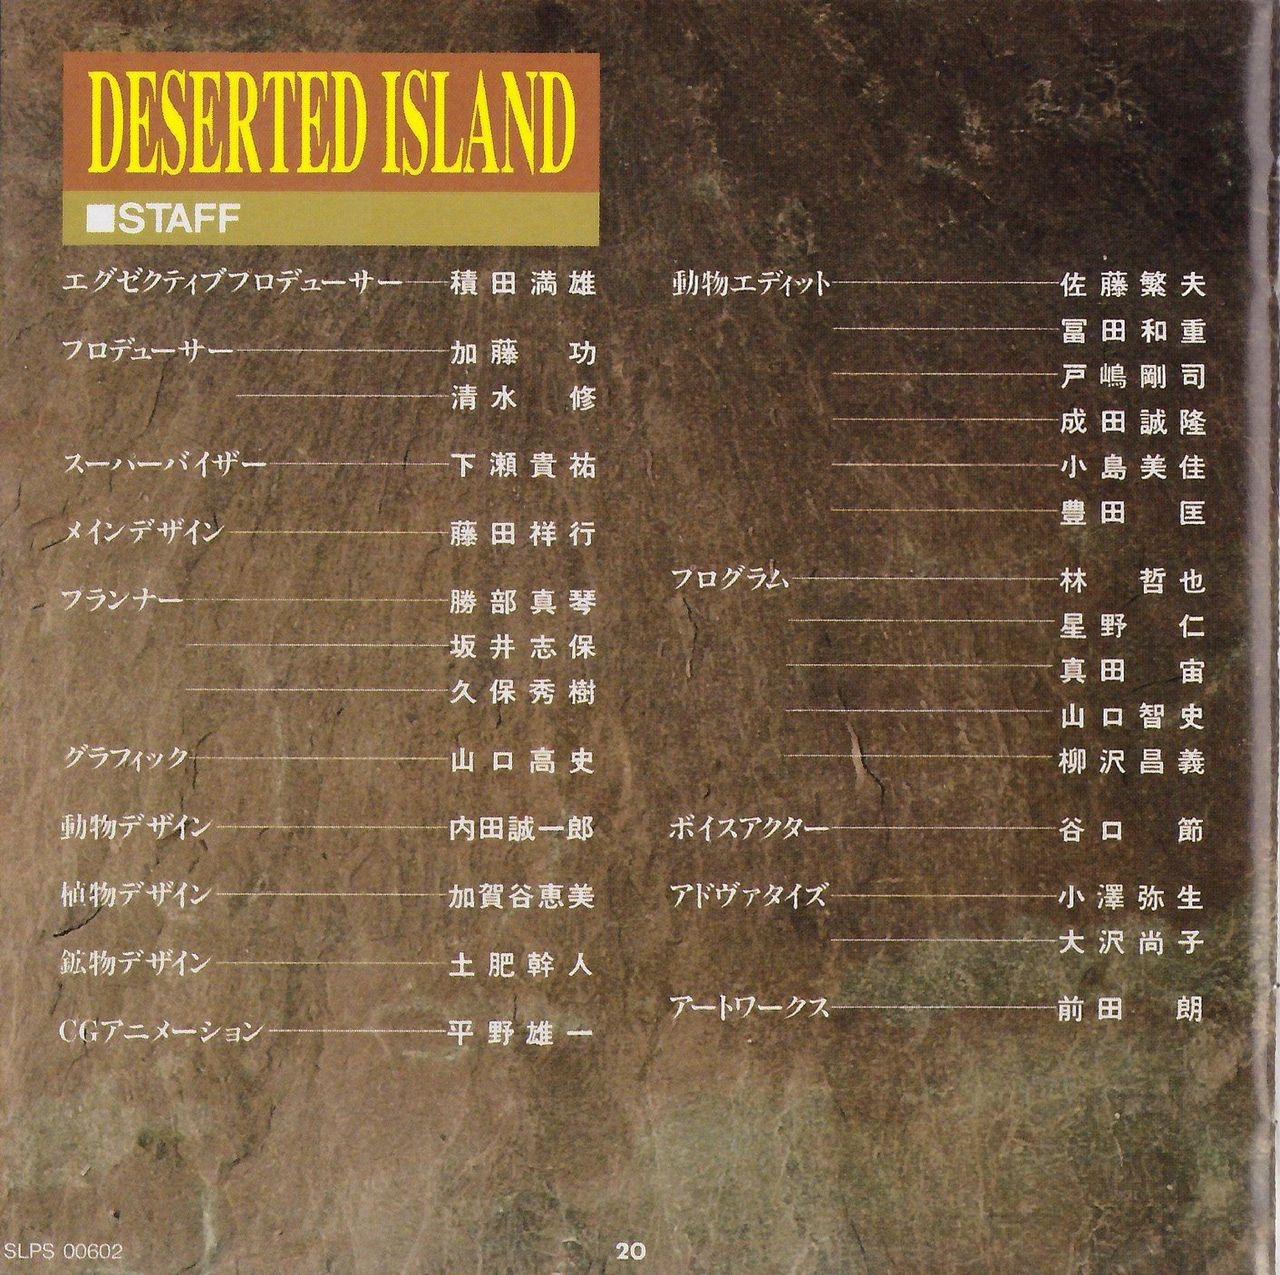 [KSS] Deserted Island - Manual 25